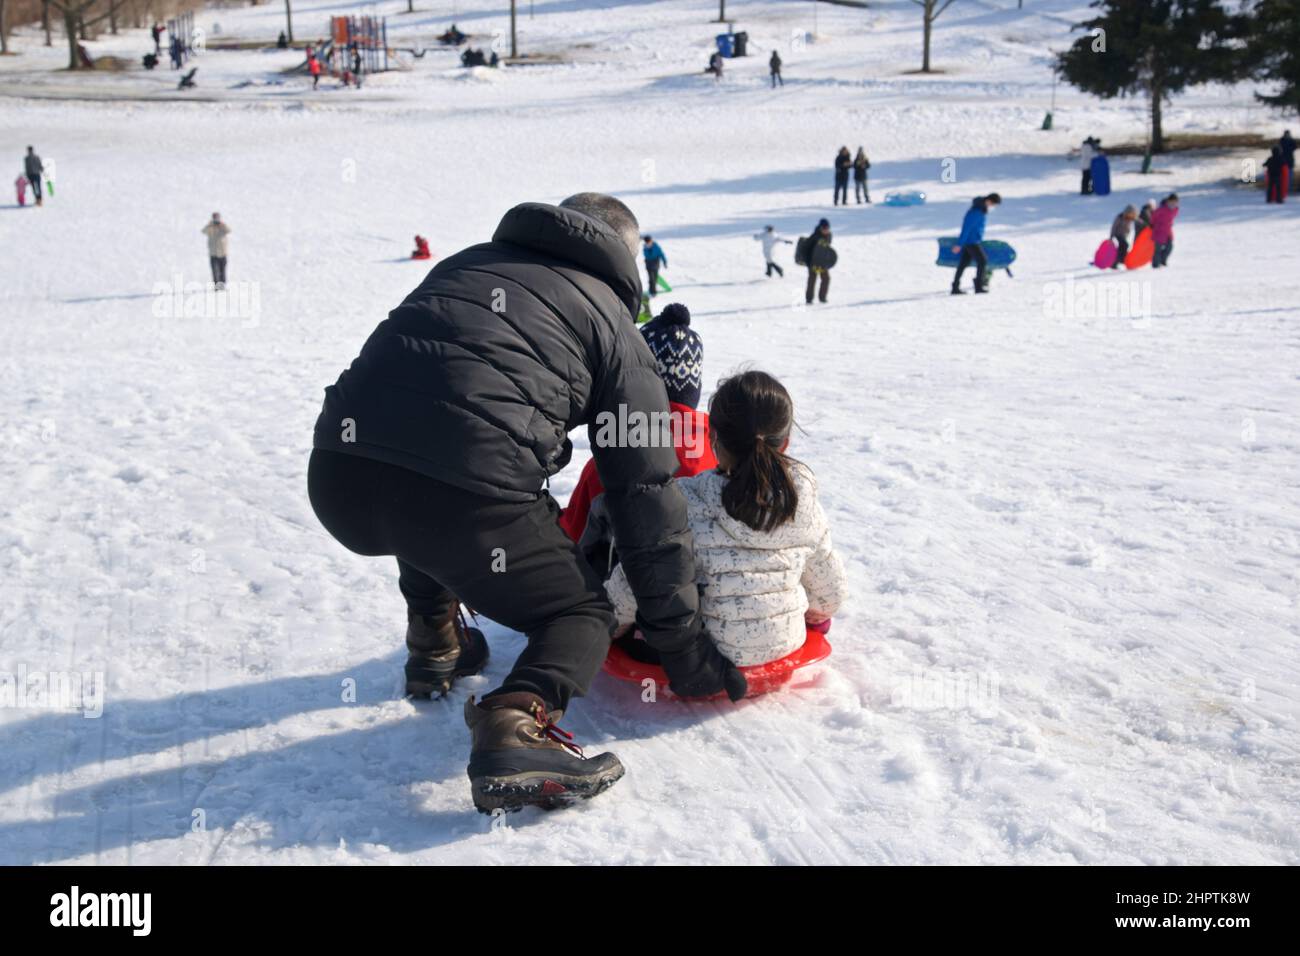 Wintersport-Rodel - Vater und Tochter spielen Rodel, Winter, draußen, gesunde Lebensweise. Stockfoto